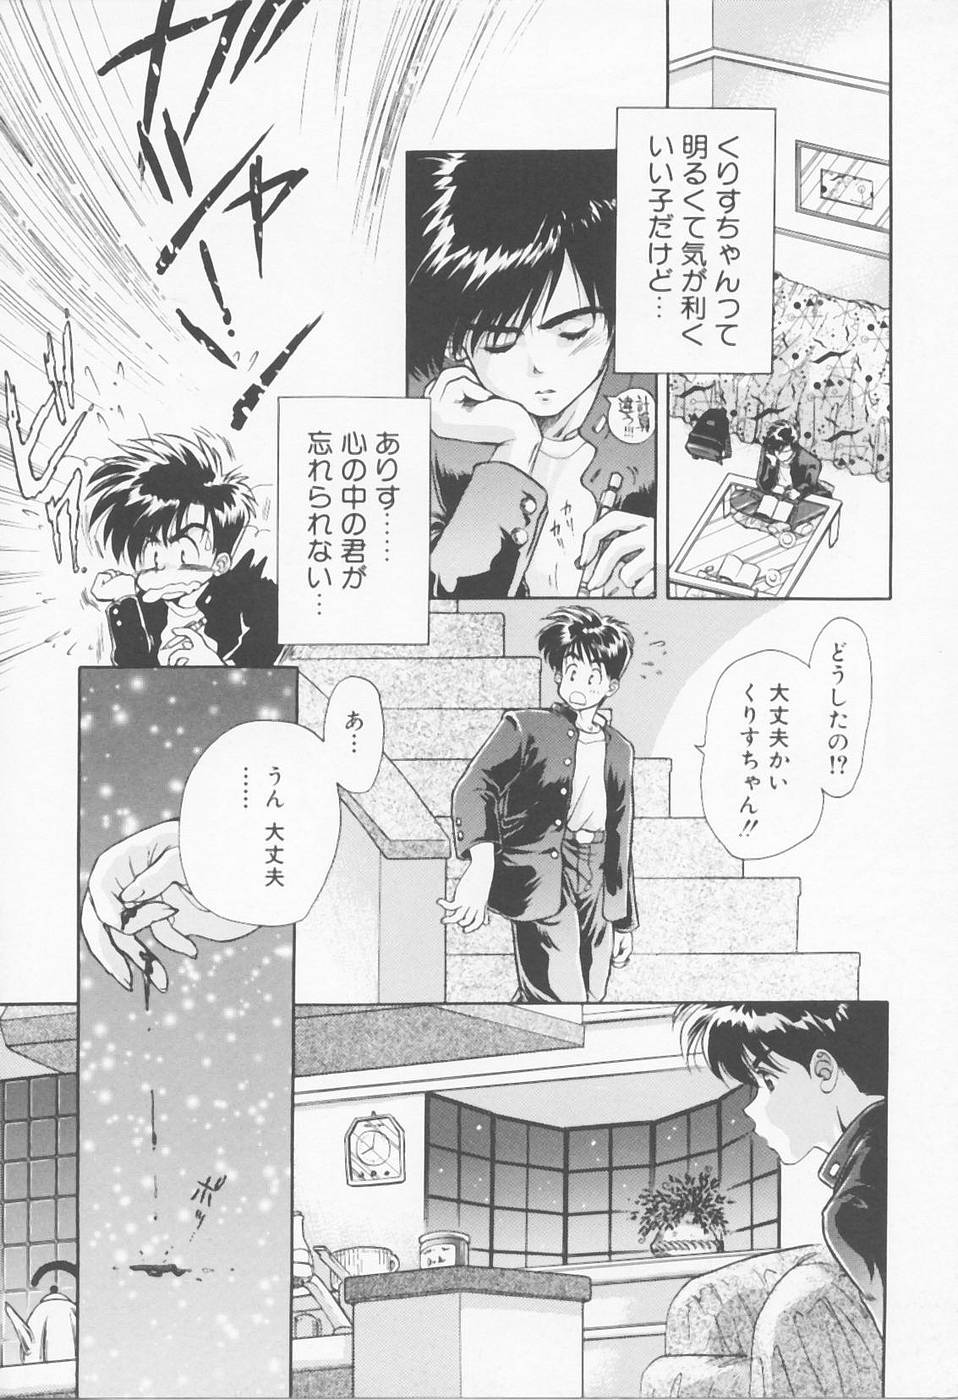 [Sensouji Kinoto] Call page 16 full